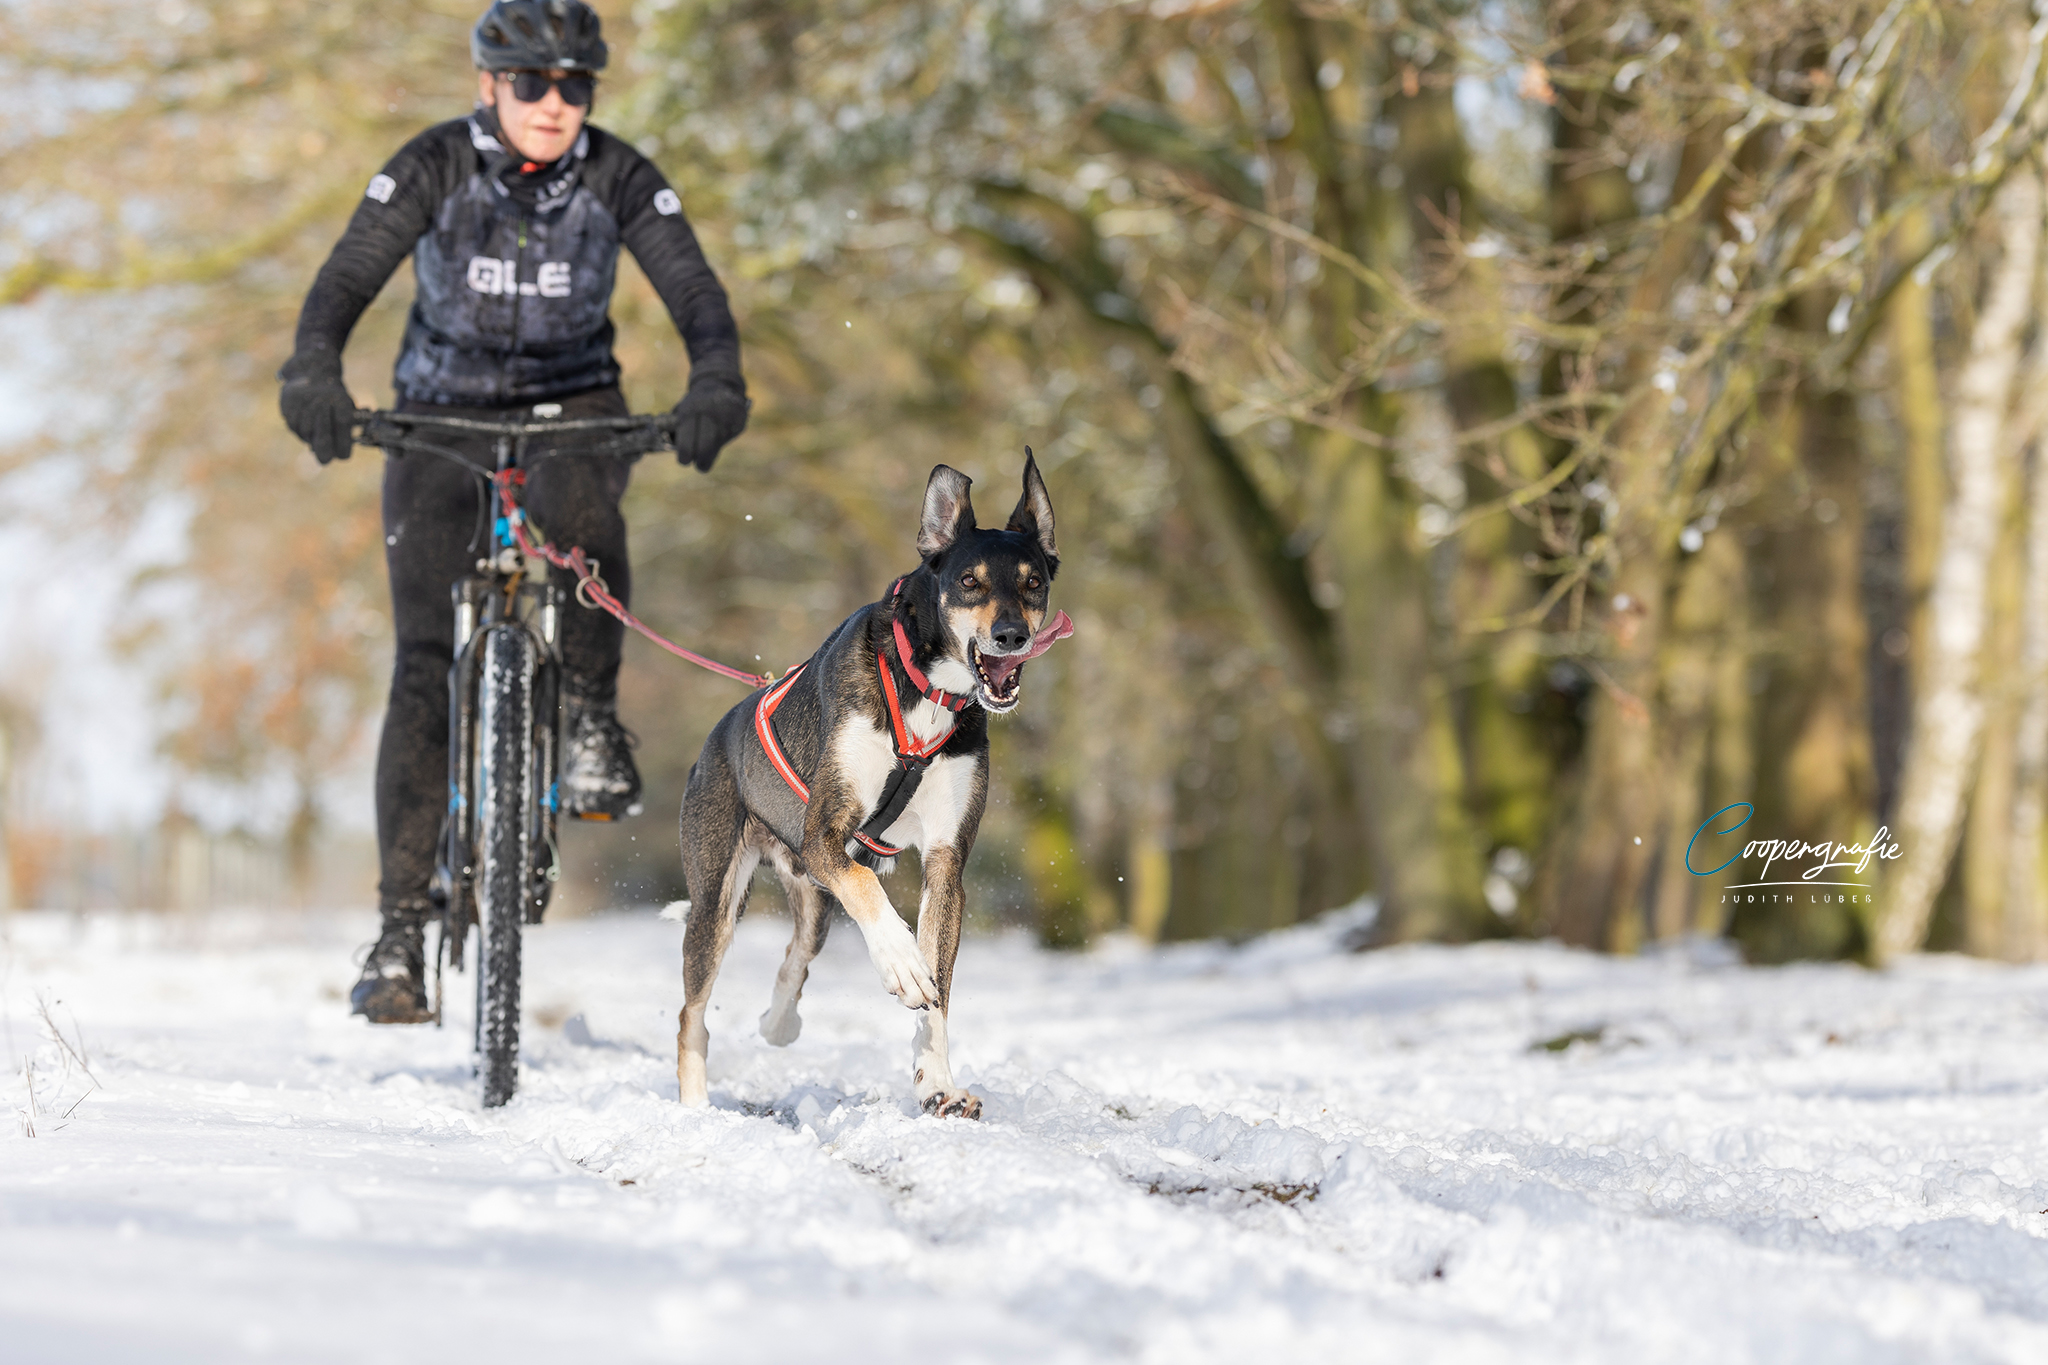 Bikejöring im Schnee beim Schlittenhunderennen in Kunrau fotografiert von Judith Lübeß